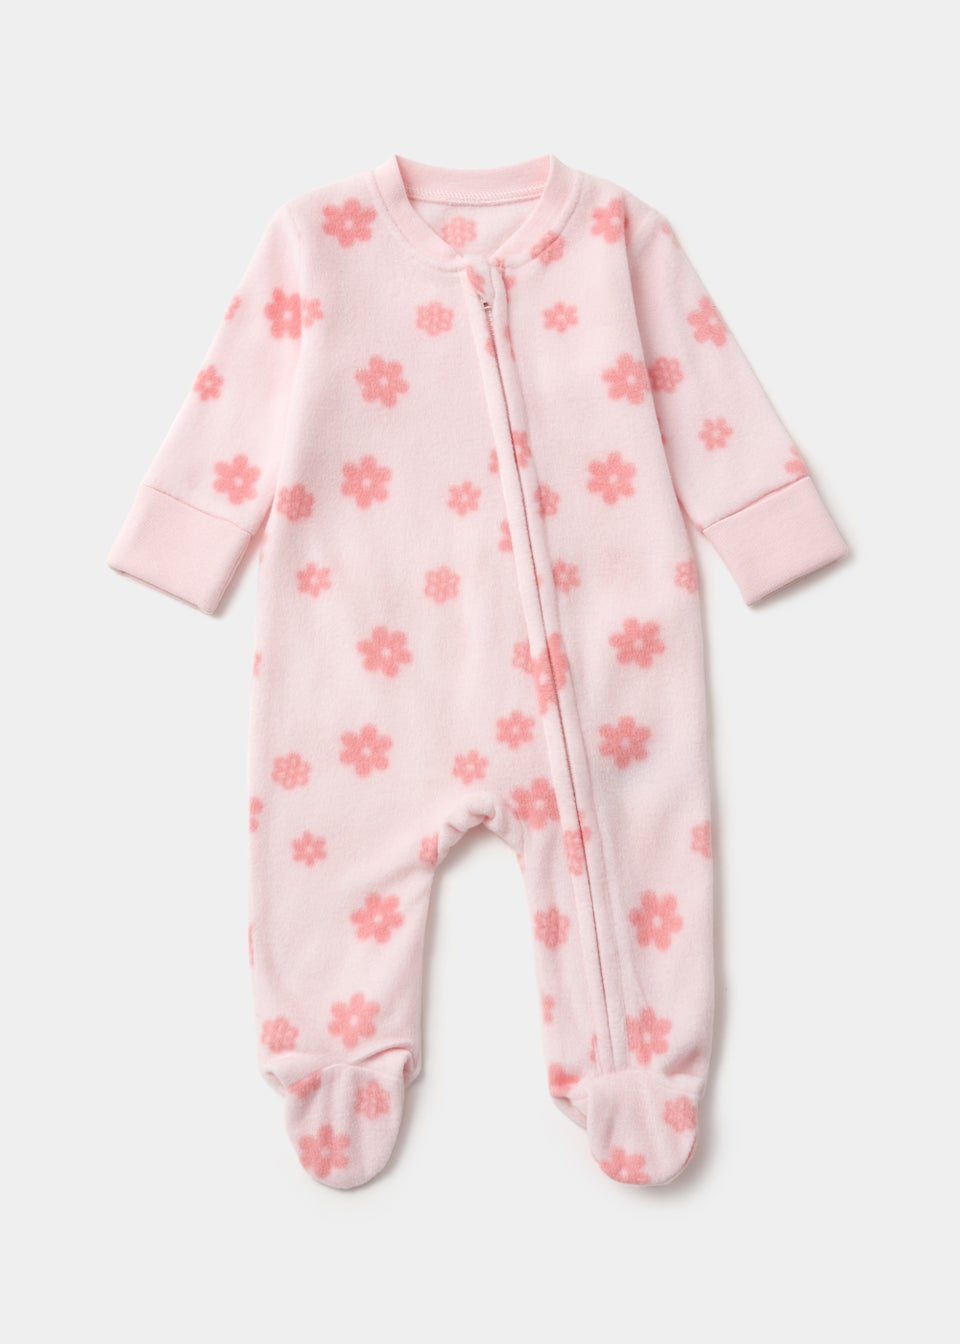 Baby Pink Floral Zip Up Fleece Sleepsuit (Newborn-18mths)